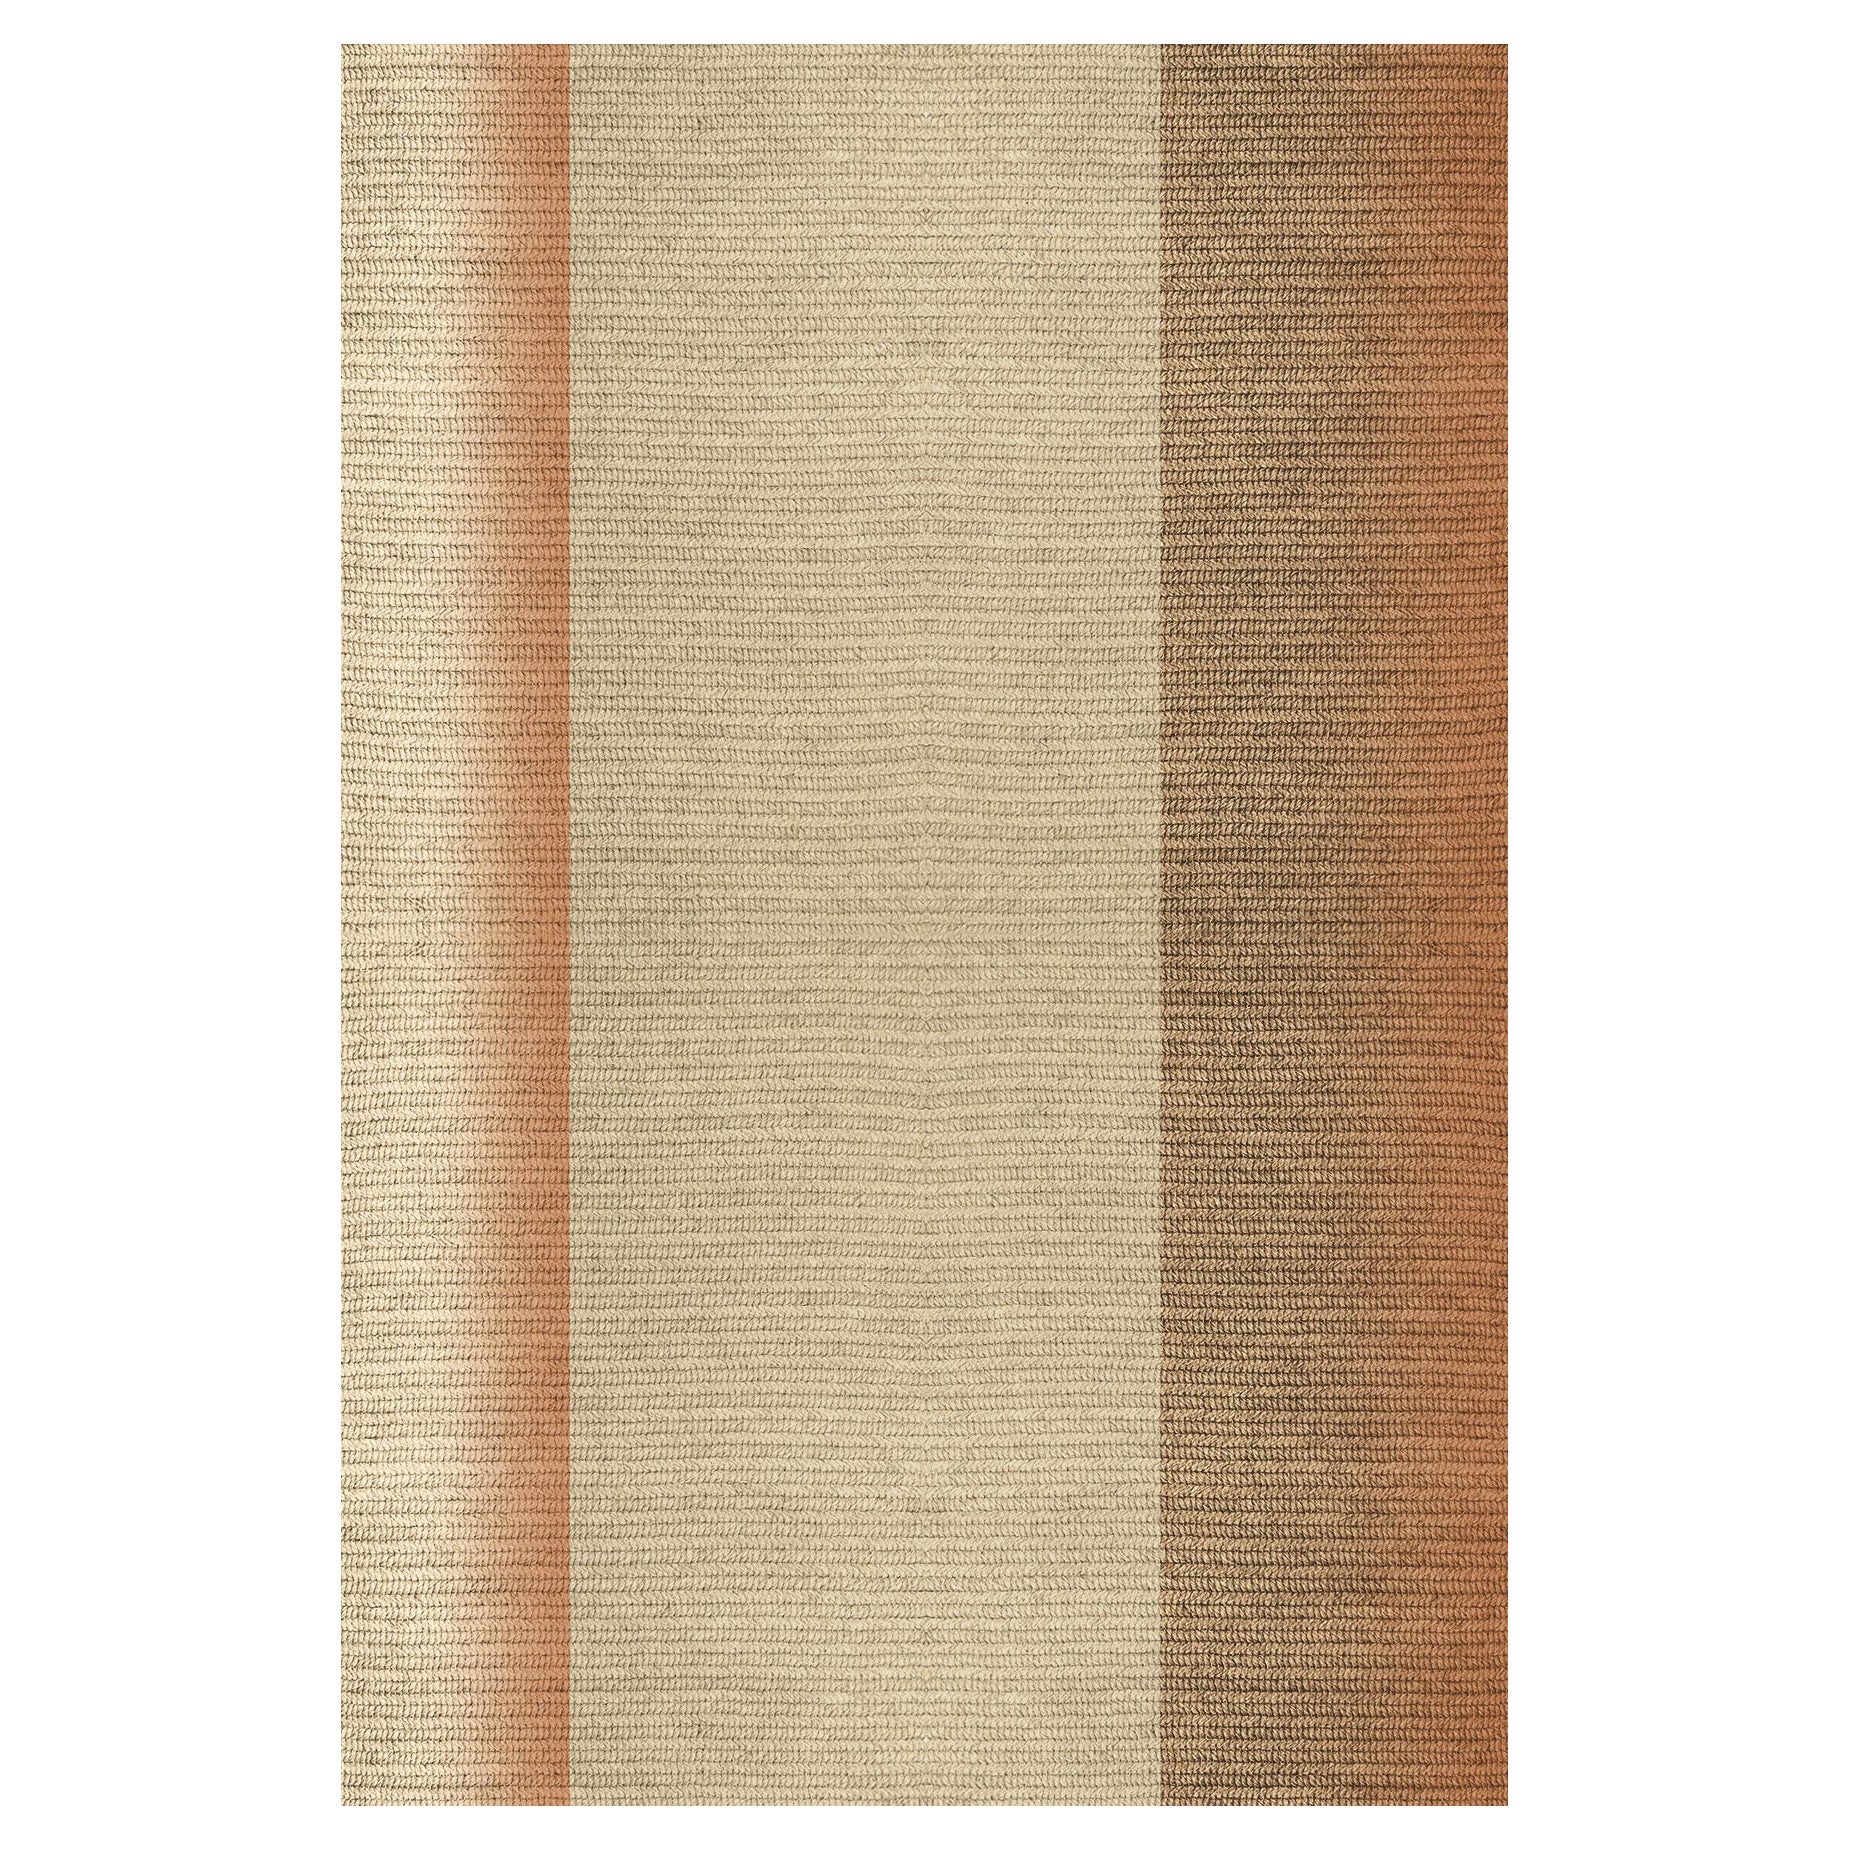 Tapis "Blur" en Abaca, Couleur "Mahogany" 200x300cm de Claire Vos pour Musett Design